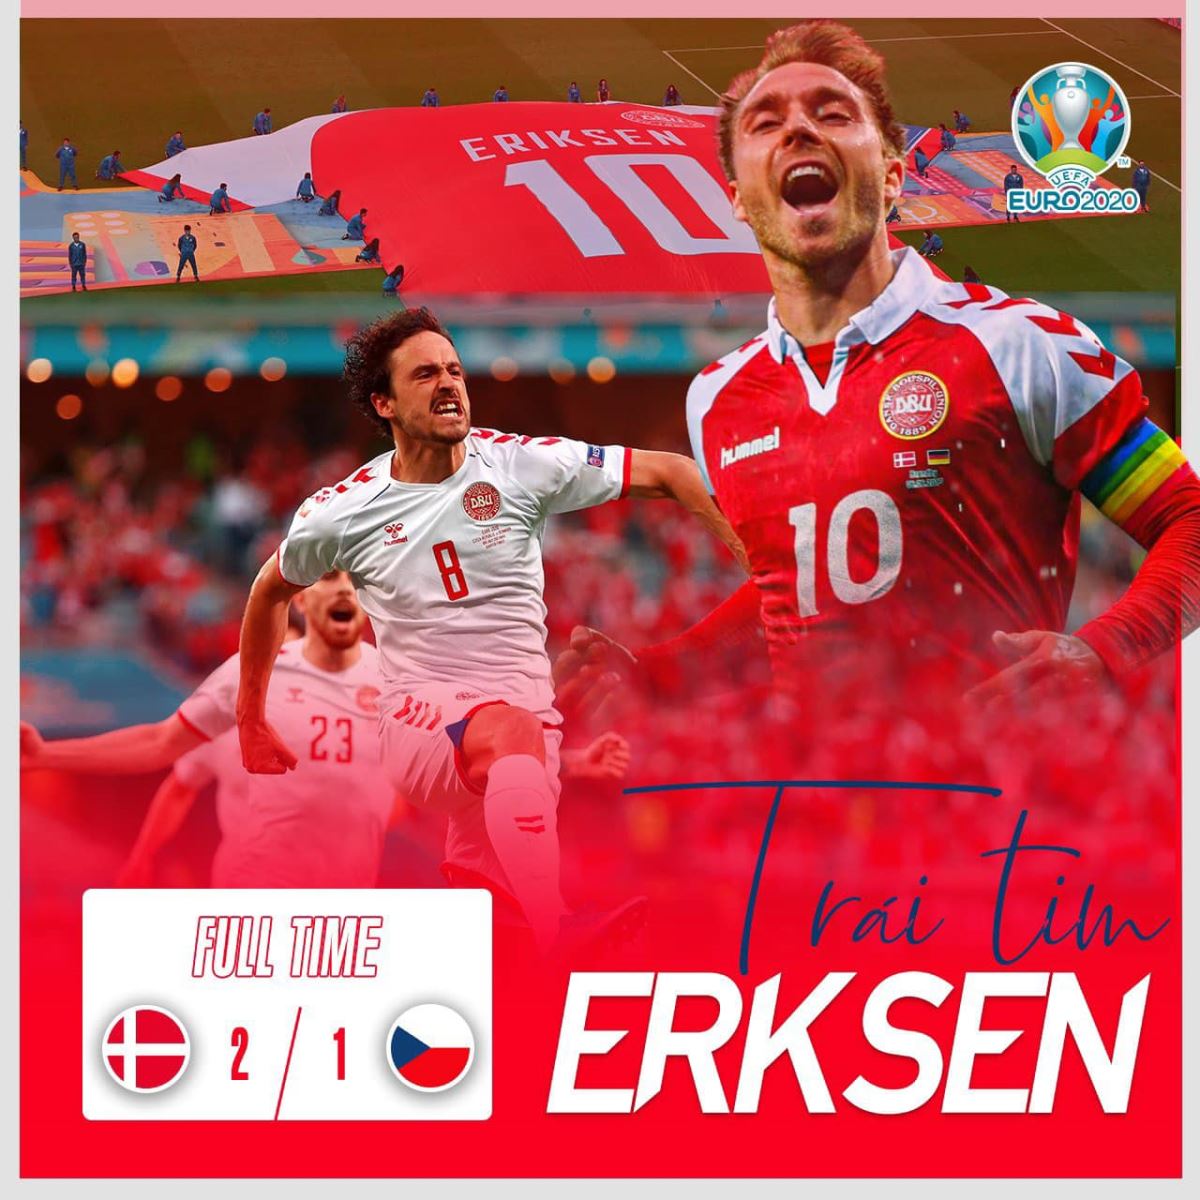 Séc 1-2 Đan Mạch, Ket qua bong da, Bàn thắng và highlights, Kết quả bóng đá EURO 2021, Kết quả Séc đấu với Đan Mạch, Kết quả Séc vs Đan Mạch, VTV6, VTV3 trực tiếp